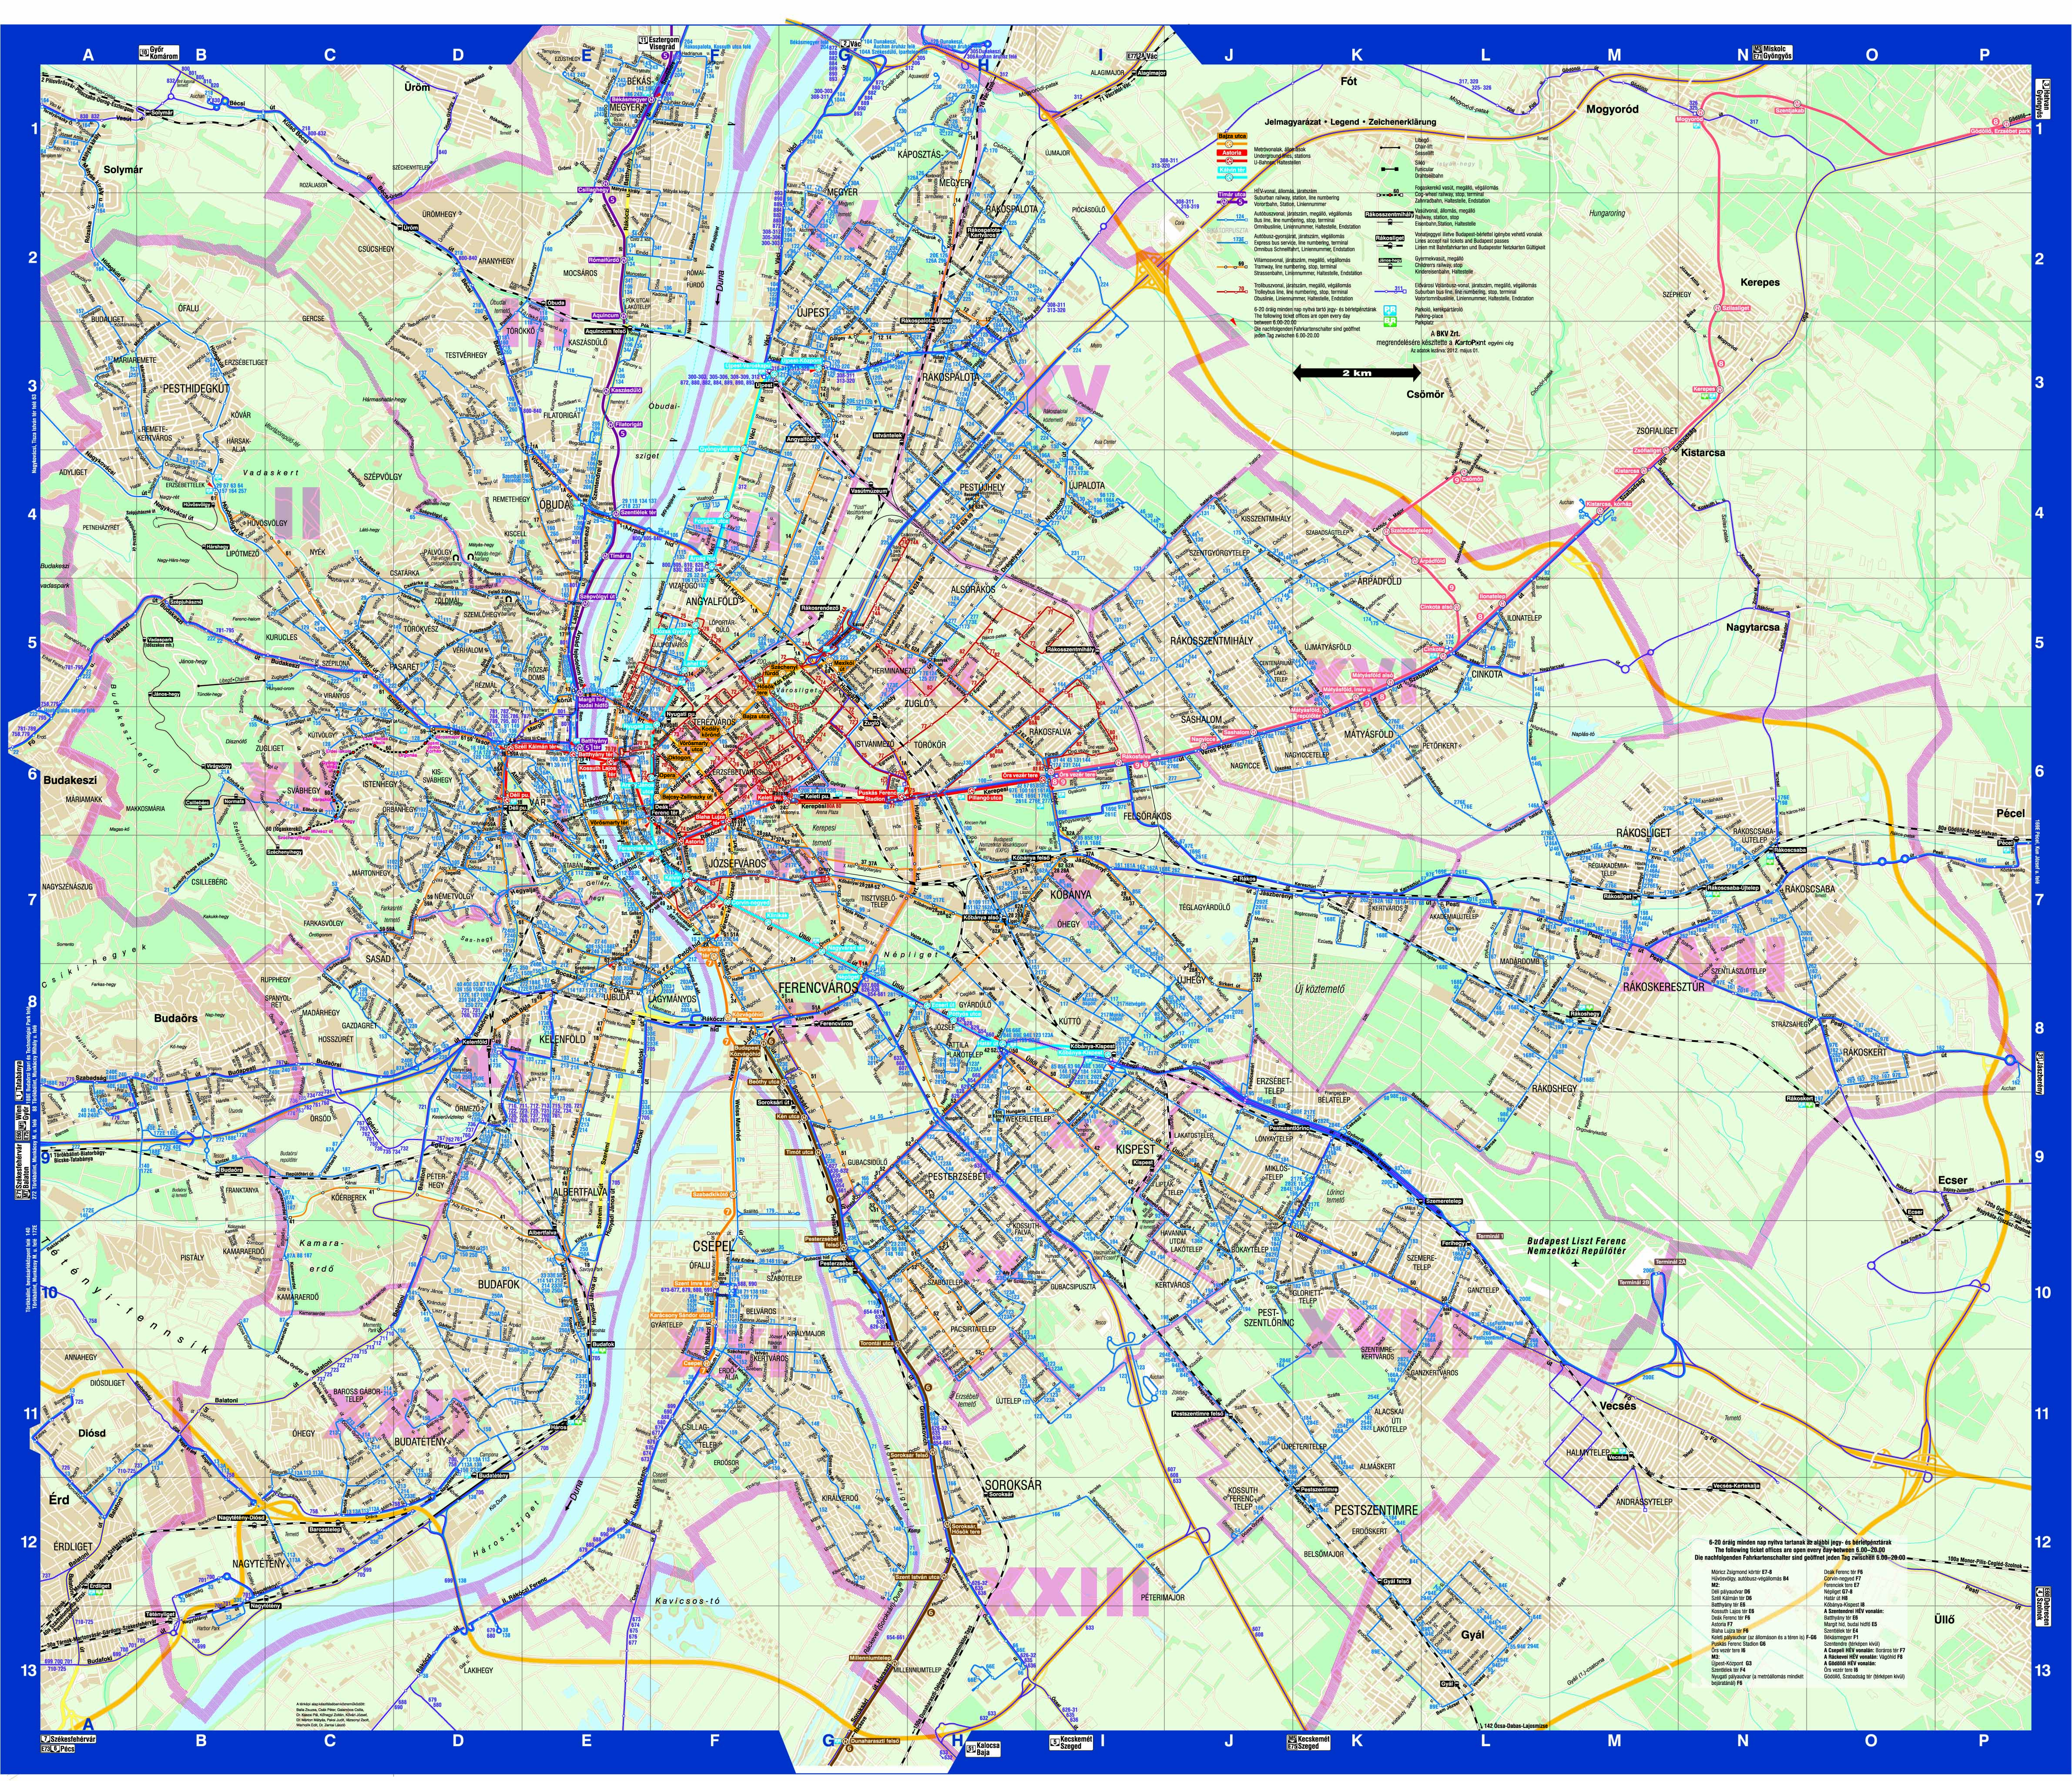 budapest térkép metróvonalak Agocs Robert_Diplomamunka1 budapest térkép metróvonalak